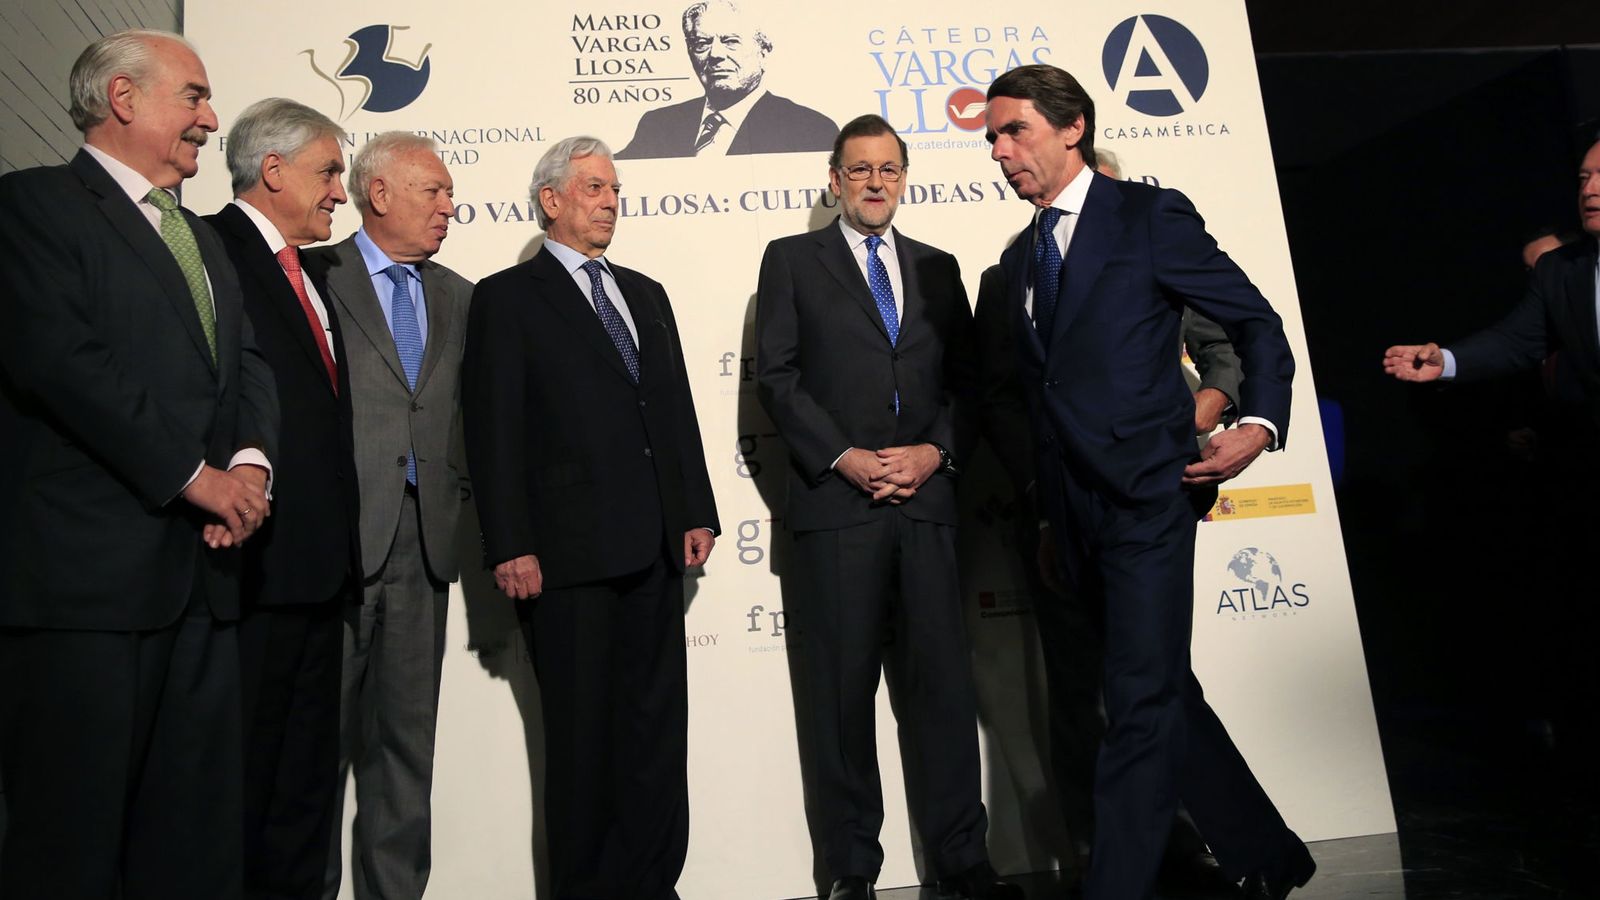 Foto: El presidente del Gobierno en funciones, Mariano Rajoy (2d) junto a José María Aznar en el acto de Vargas Llosa. (EFE)